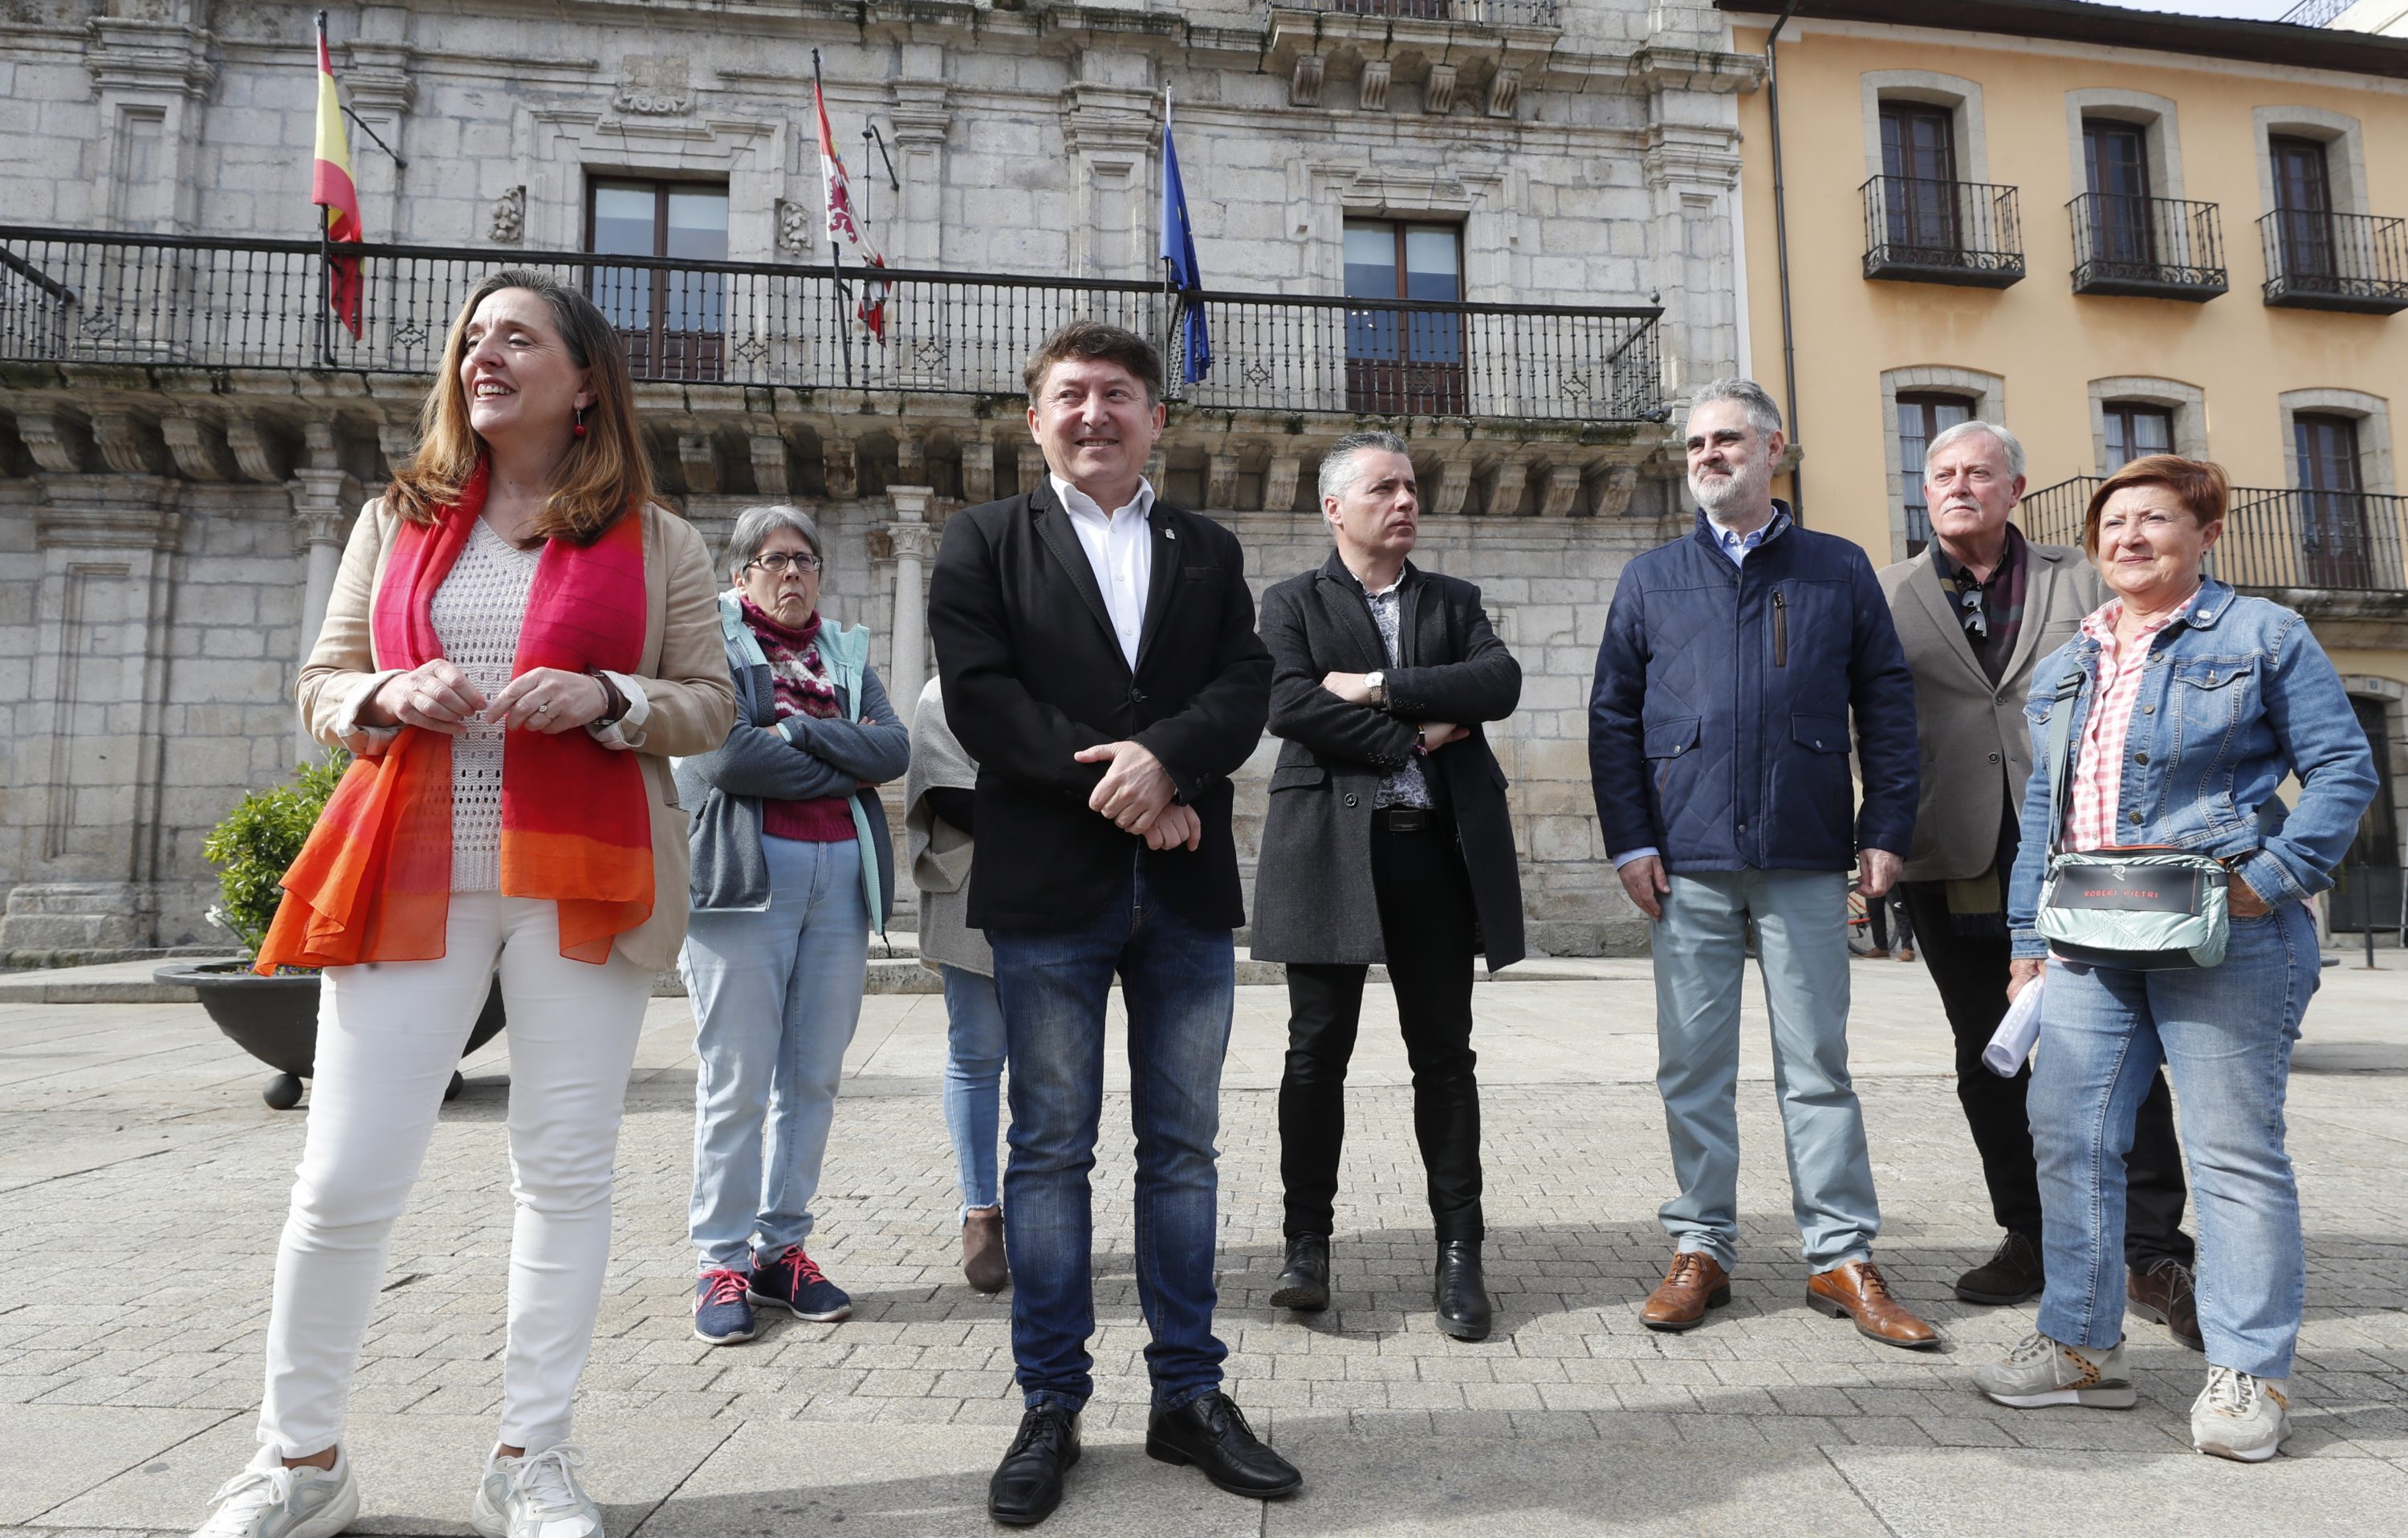 El ex alcalde de Ponferrada, Samuel Folgueral durante su comparecencia en la plaza del Ayuntamiento en el que ha anunciado que abandona la política. / César Sánchez